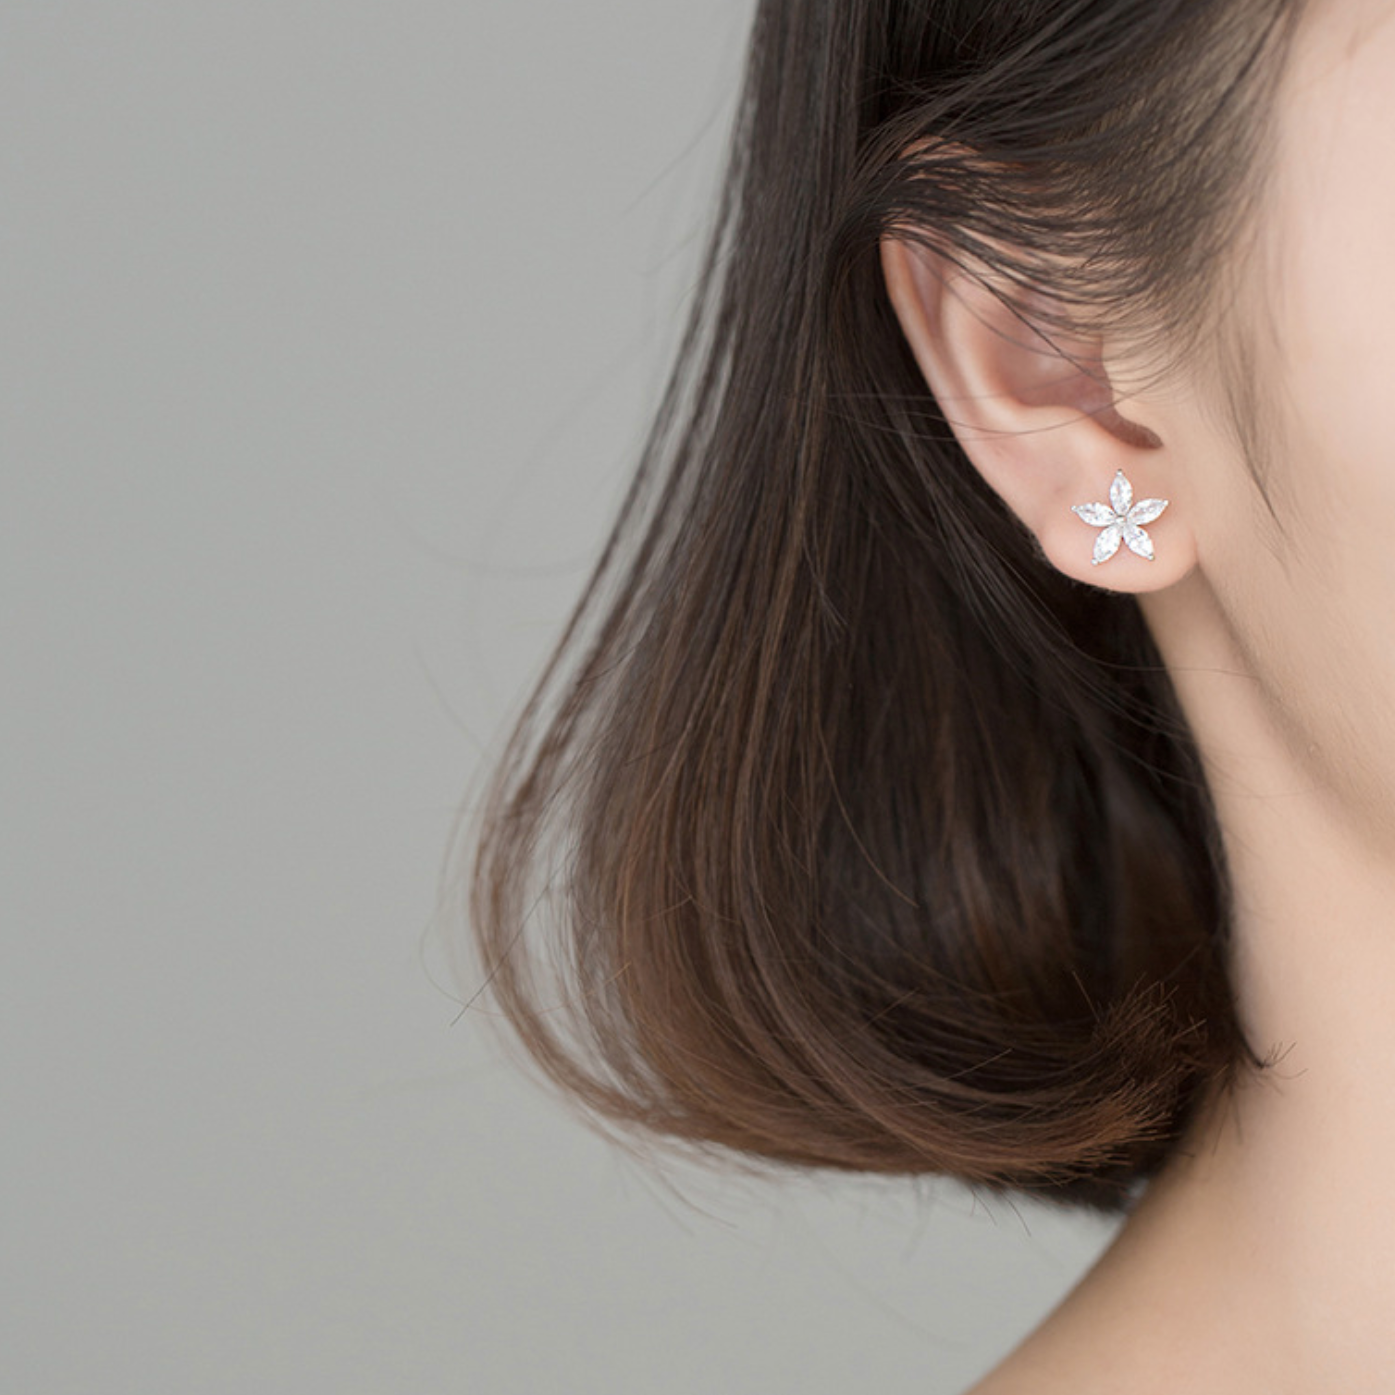 Crystal Flower Earrings With Ear Cuff